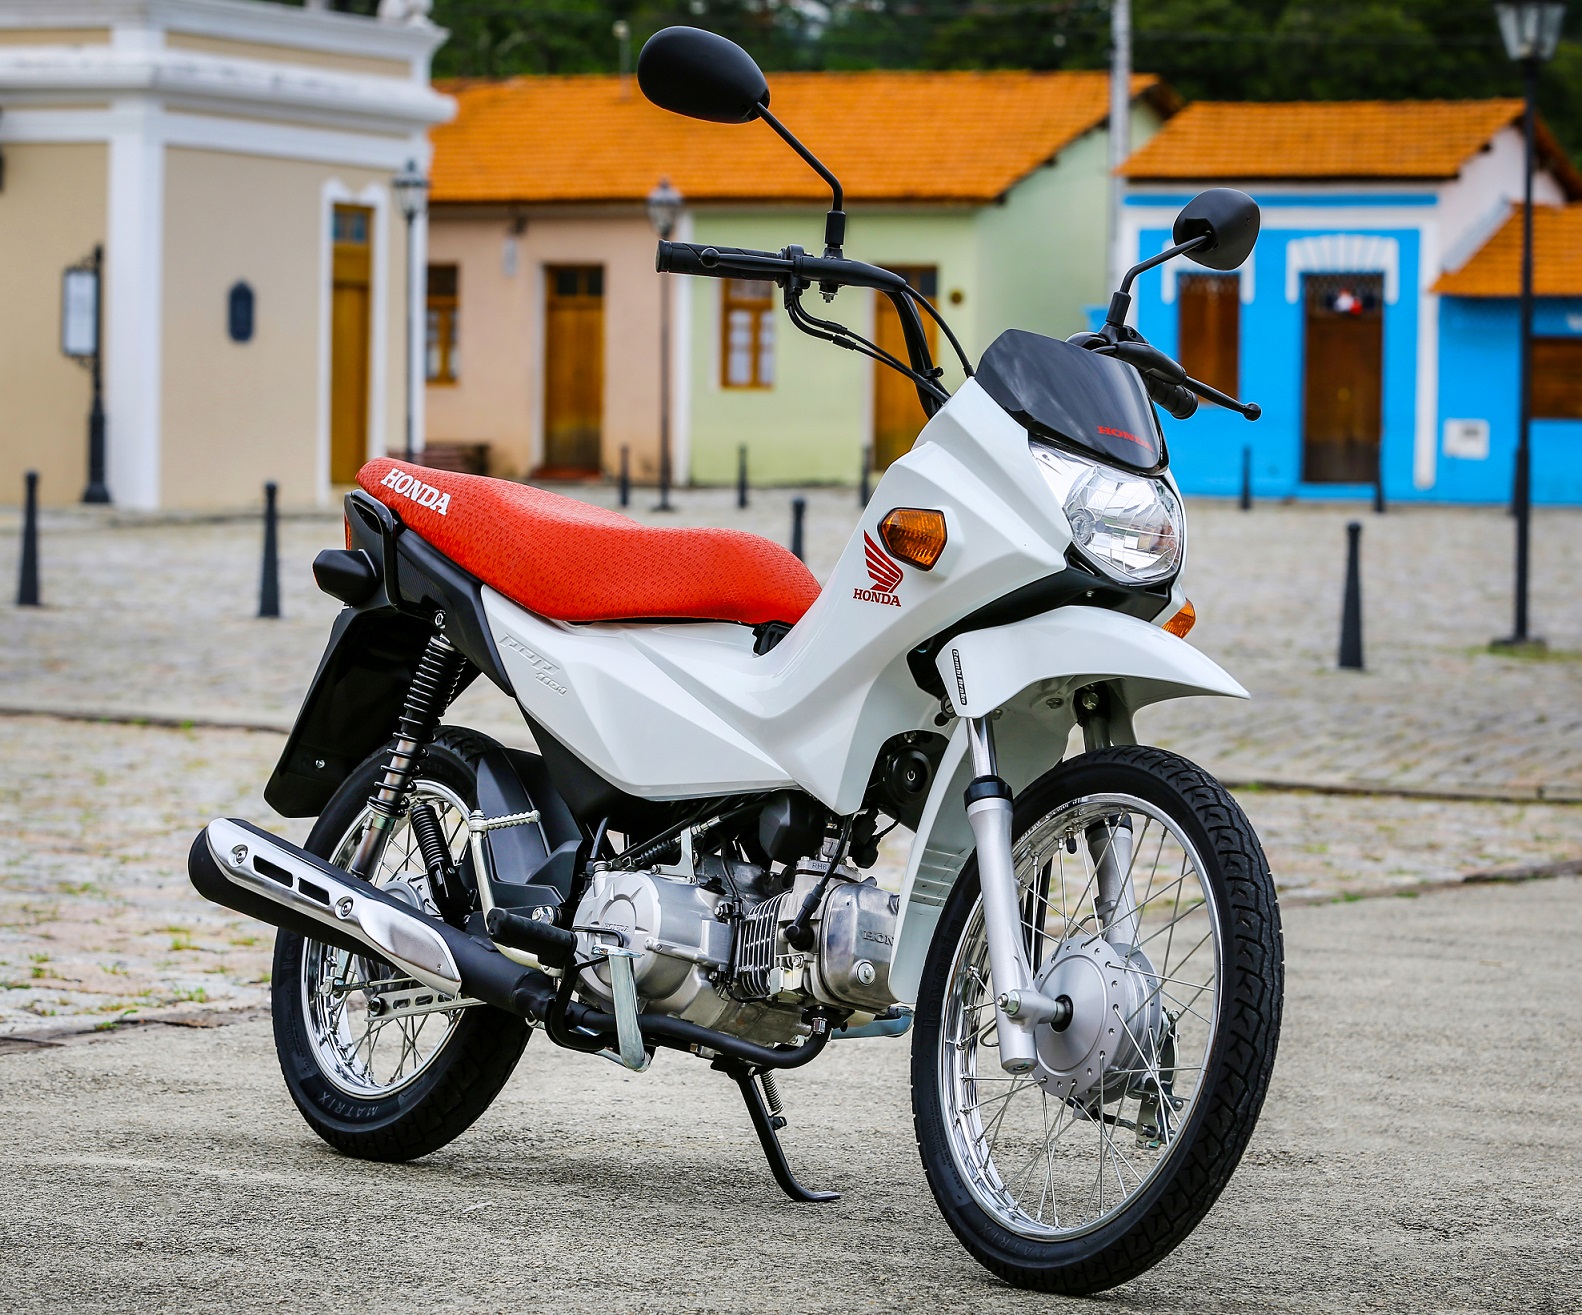 Pop ou Biz: como as motos mais baratas da Honda se comparam?